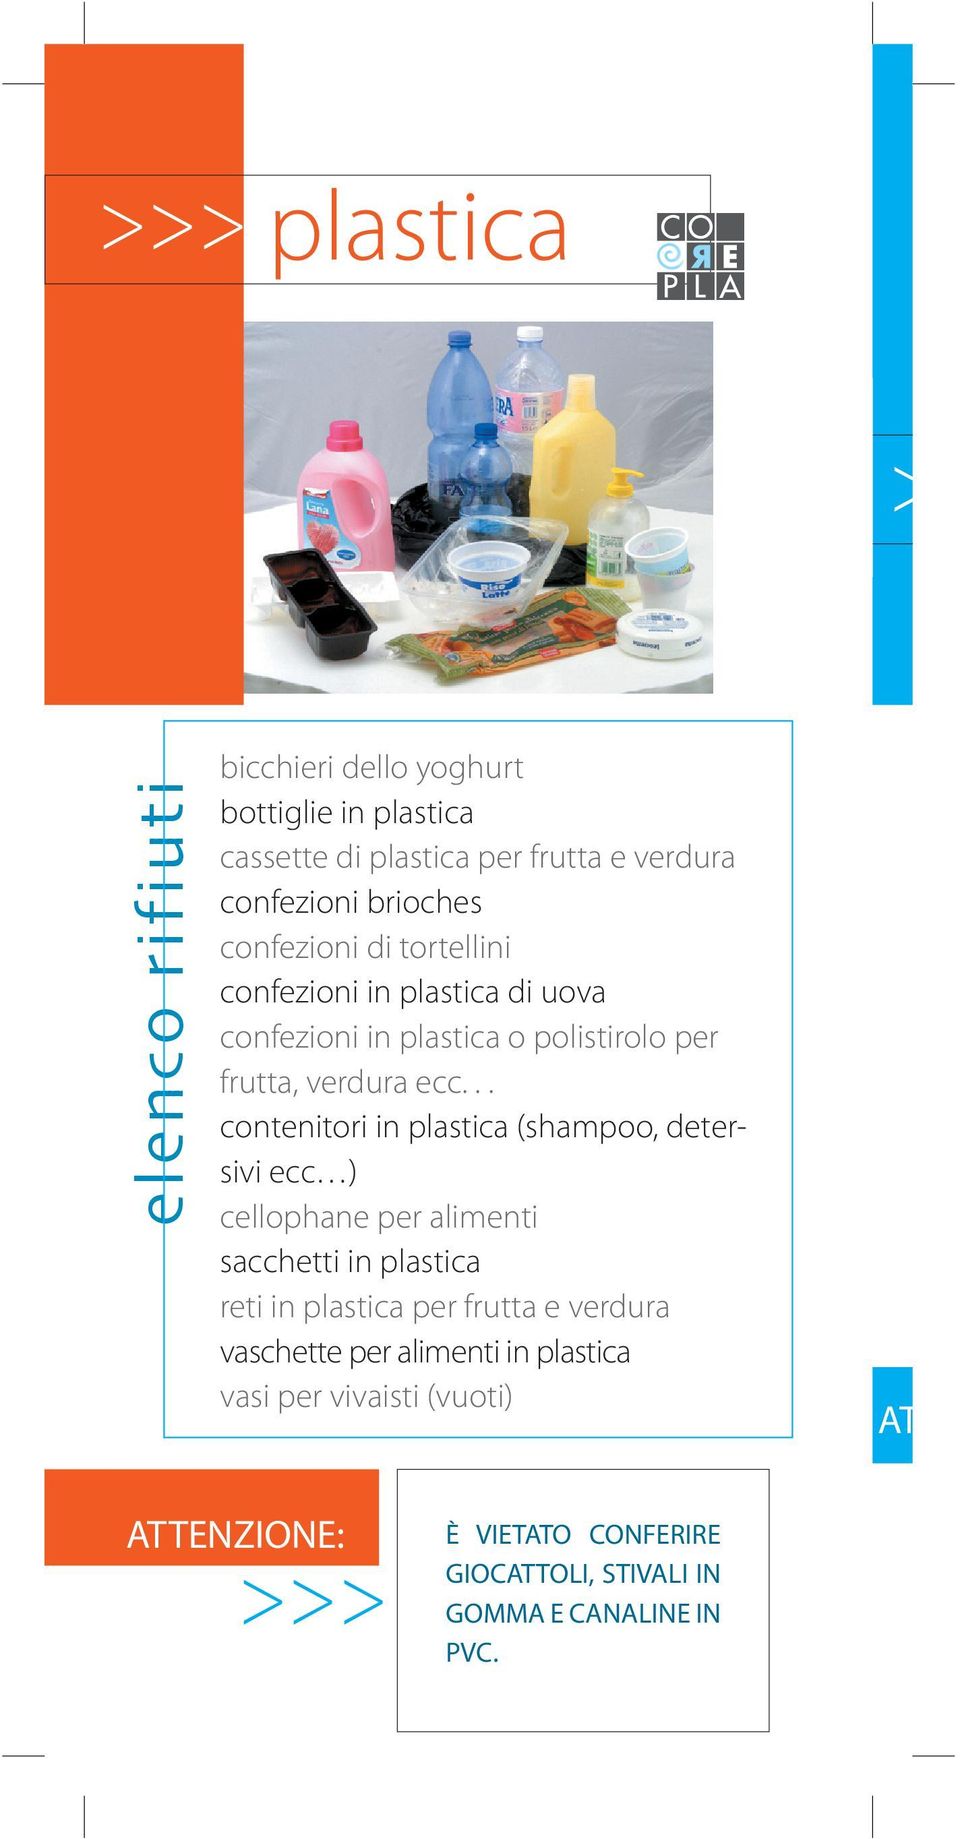 .. contenitori in plastica (shampoo, detersivi ecc ) cellophane per alimenti sacchetti in plastica reti in plastica per frutta e